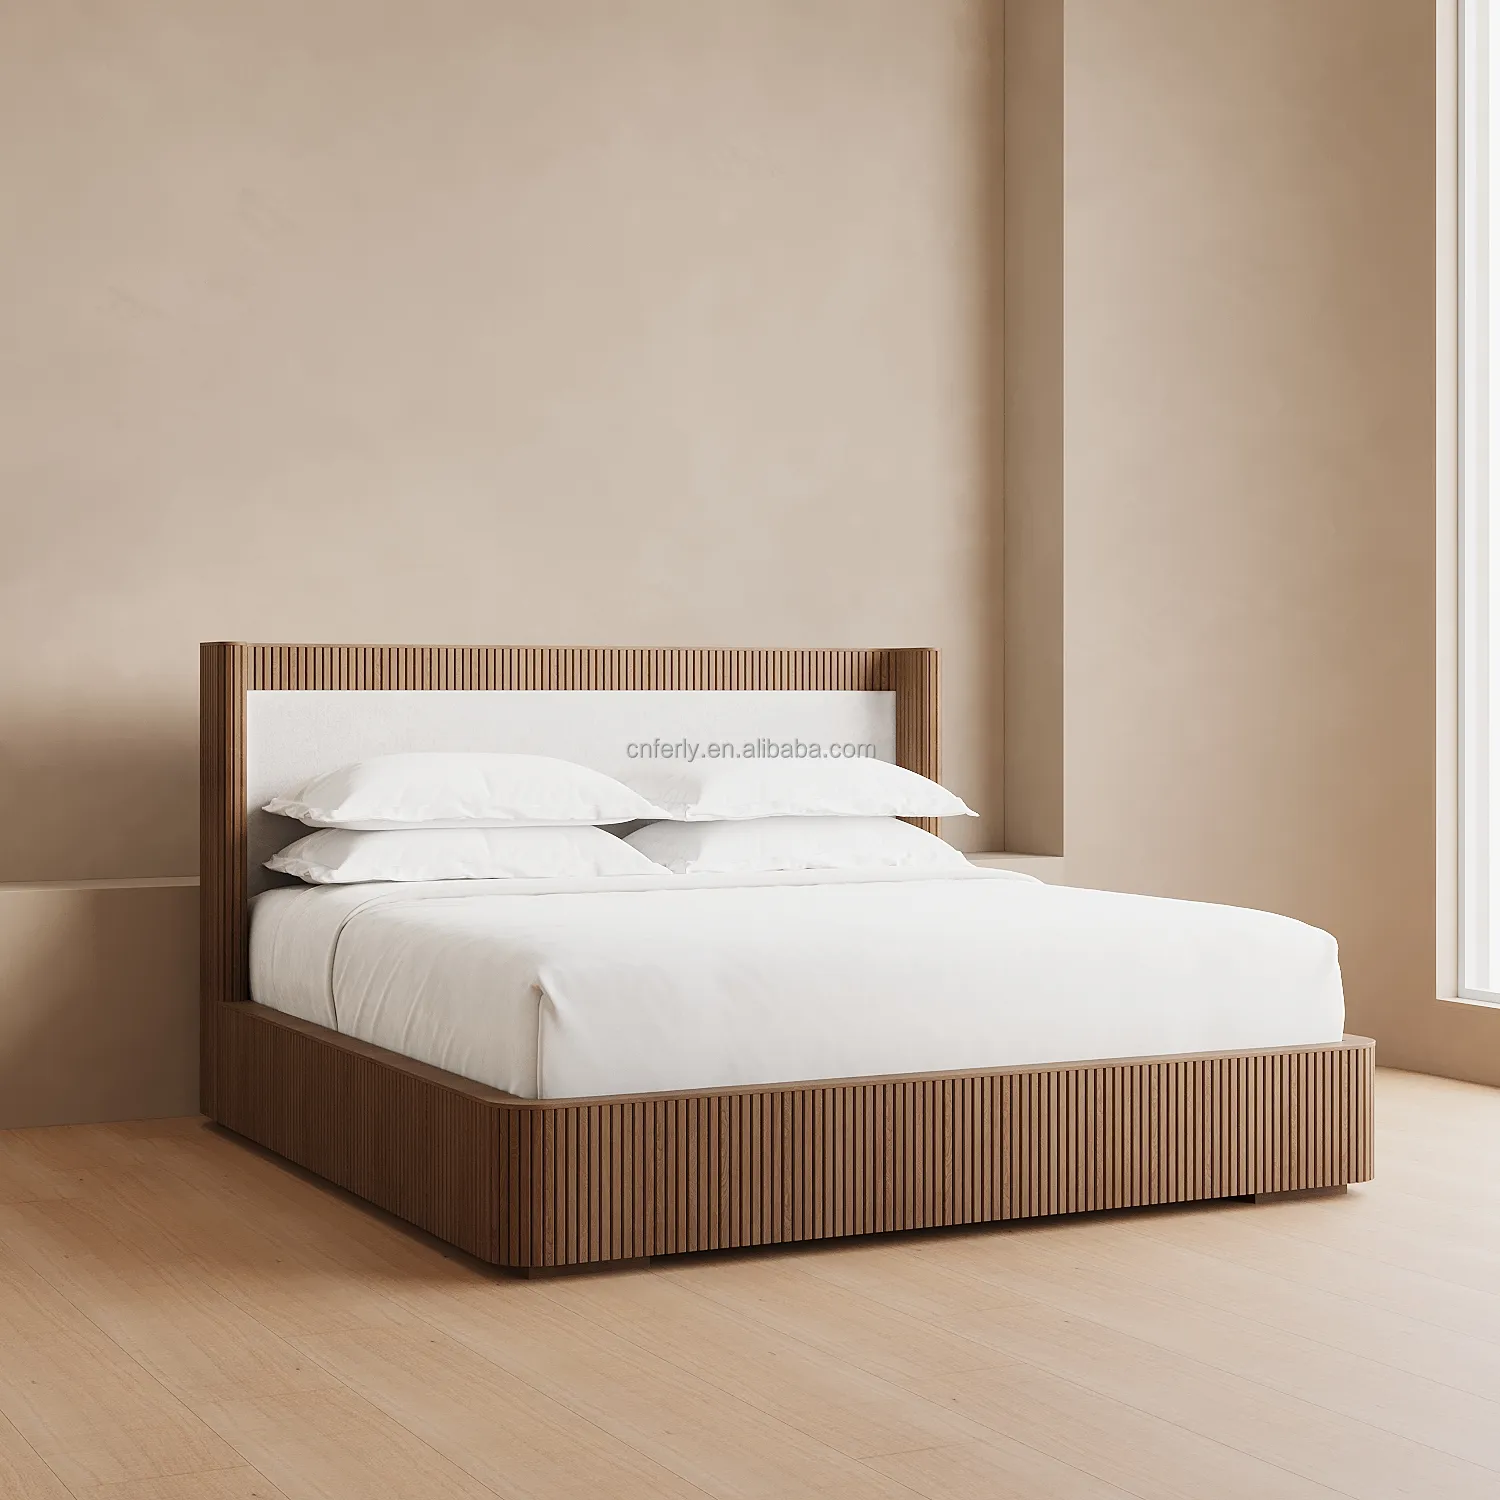 Design moderno Luxo De Madeira Queen Colchão Cama Quadro Cama King Size Shelter Bed